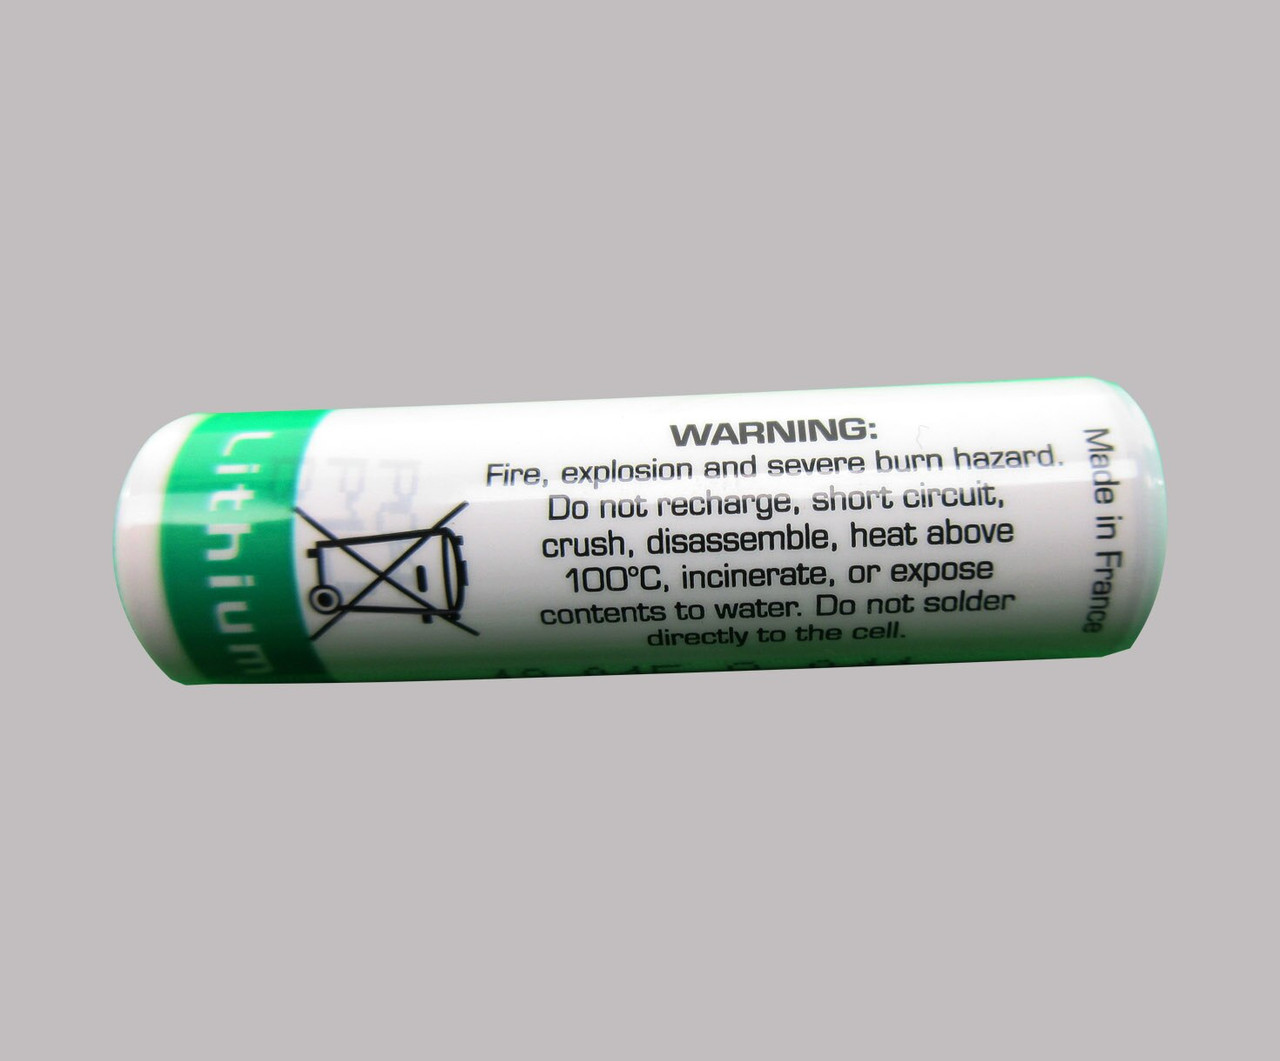 Saft LS14500 AA 3.6-Volt / 2600 mAh Li-SOCl2 Lithium Battery at